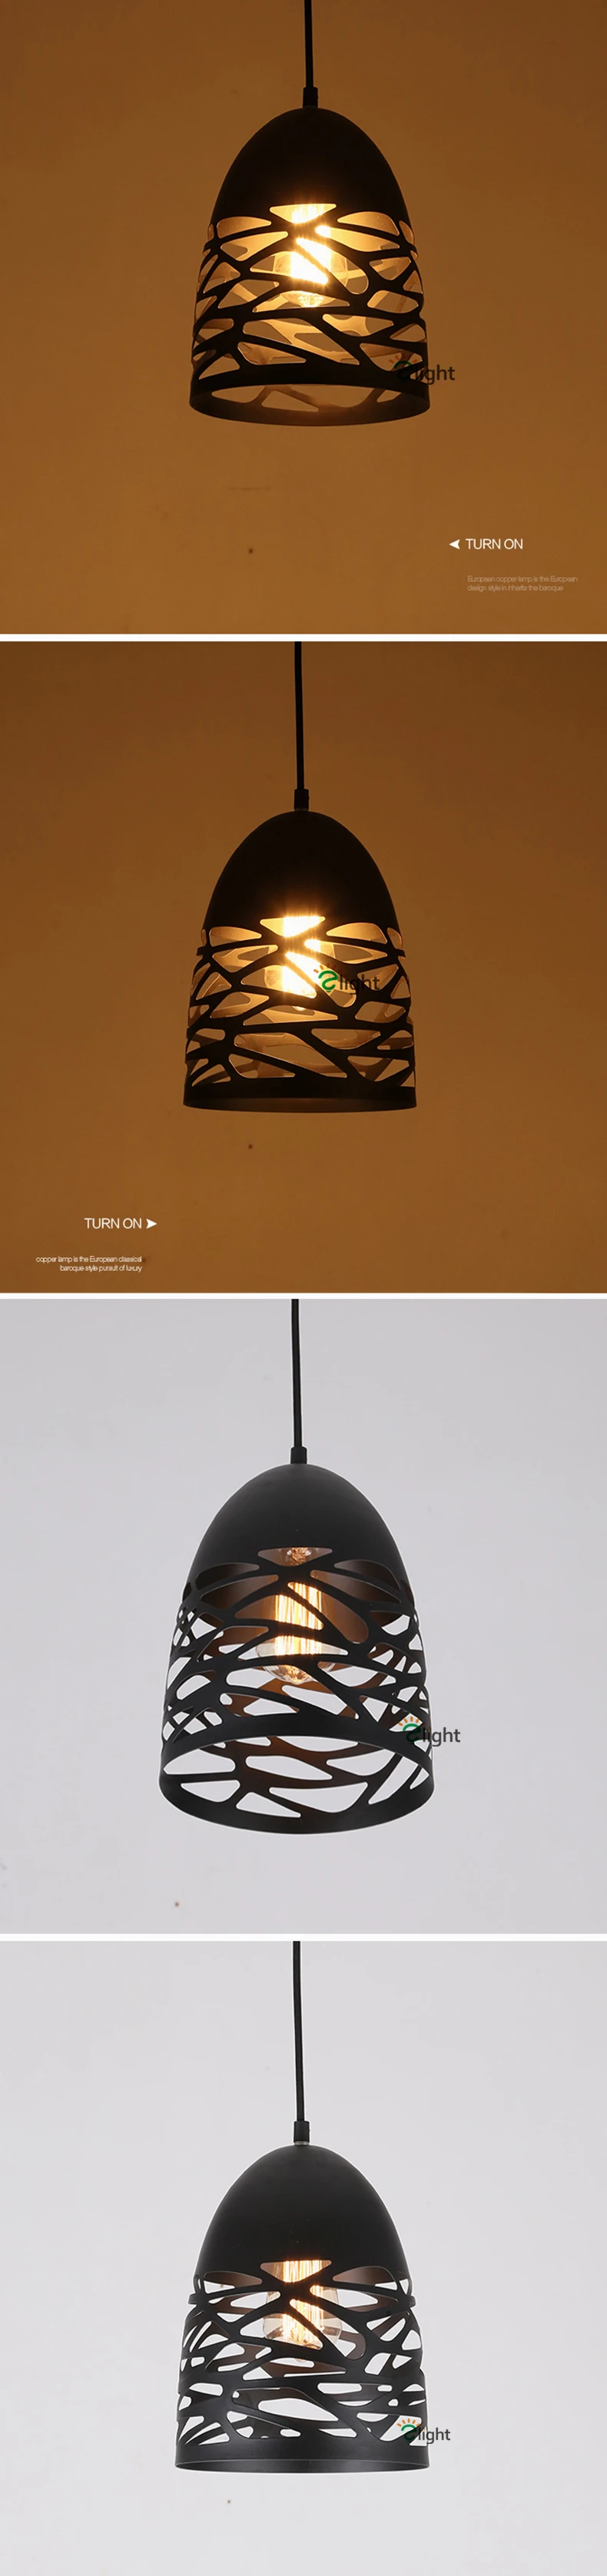 Студия Italia Келли подвесной светильник Painte металлический светодиодный подвесной светильник полый железный подвесной светильник для столовой подвесной светильник